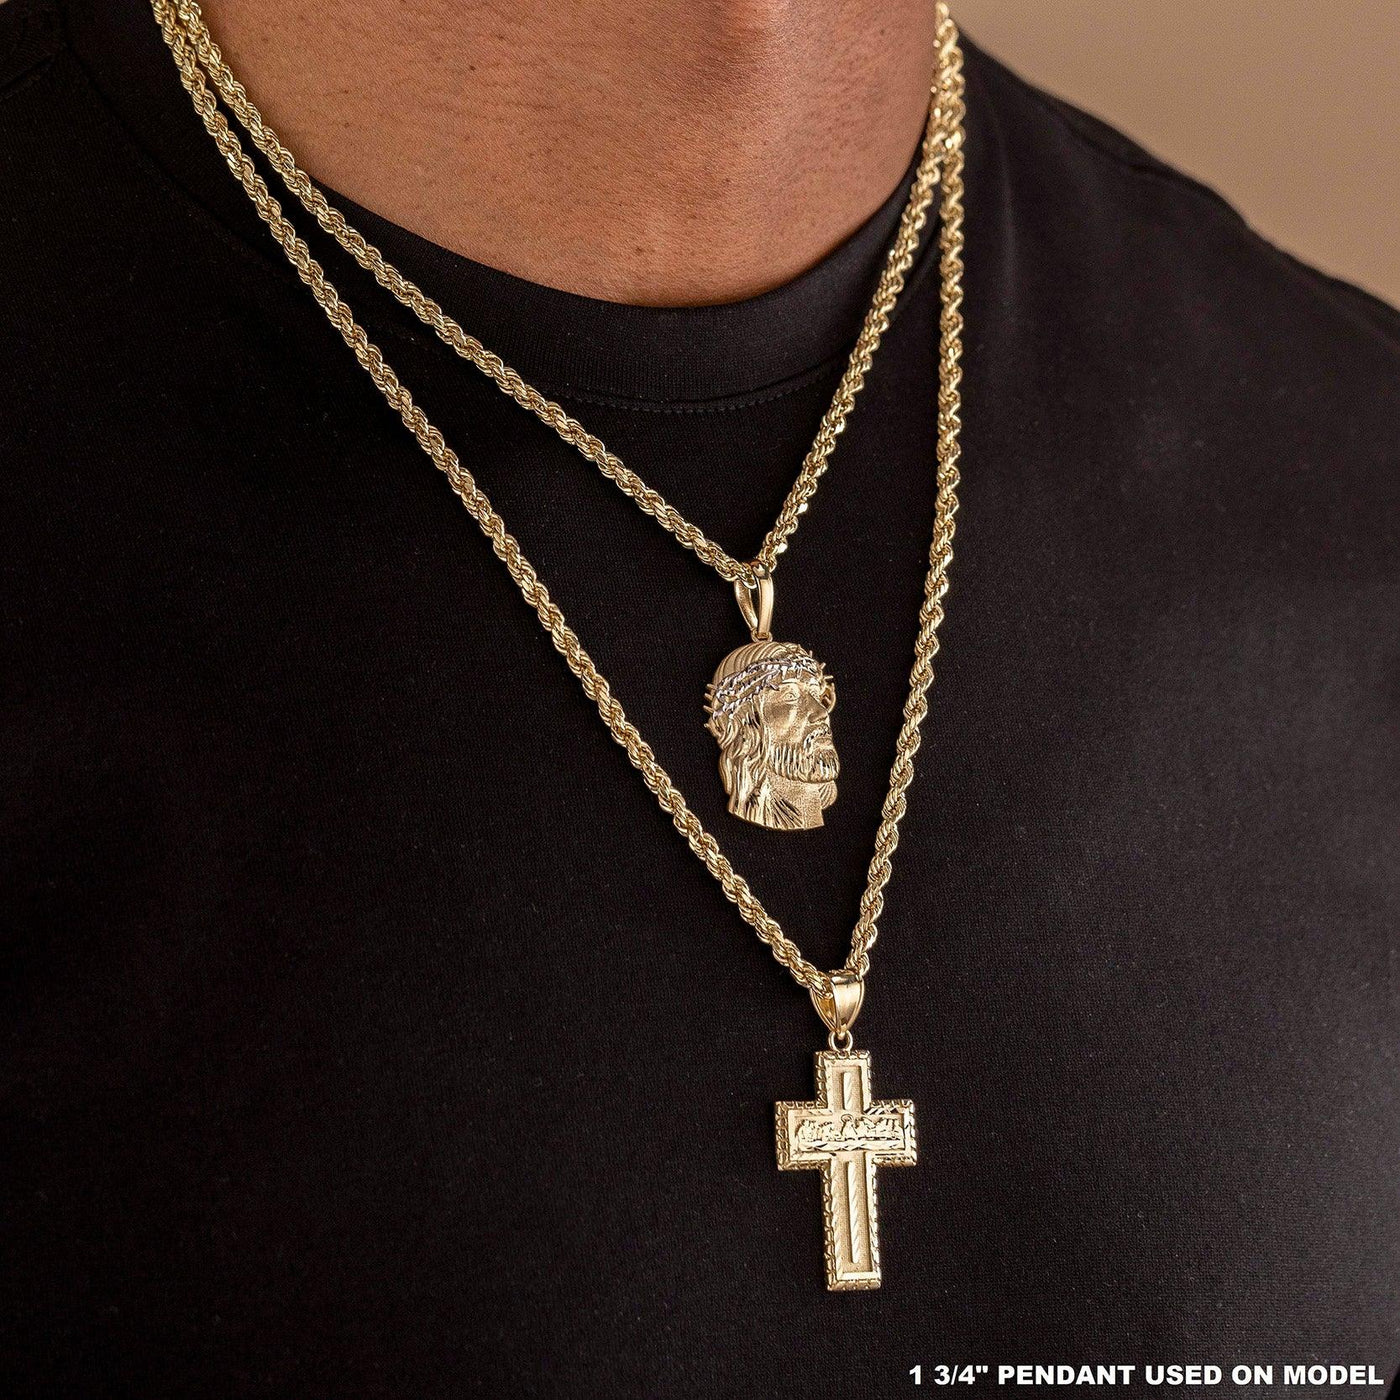 Diamond Cut Face Of Jesus Two-Tone Pendant Solid 10K Yellow Gold - bayamjewelry